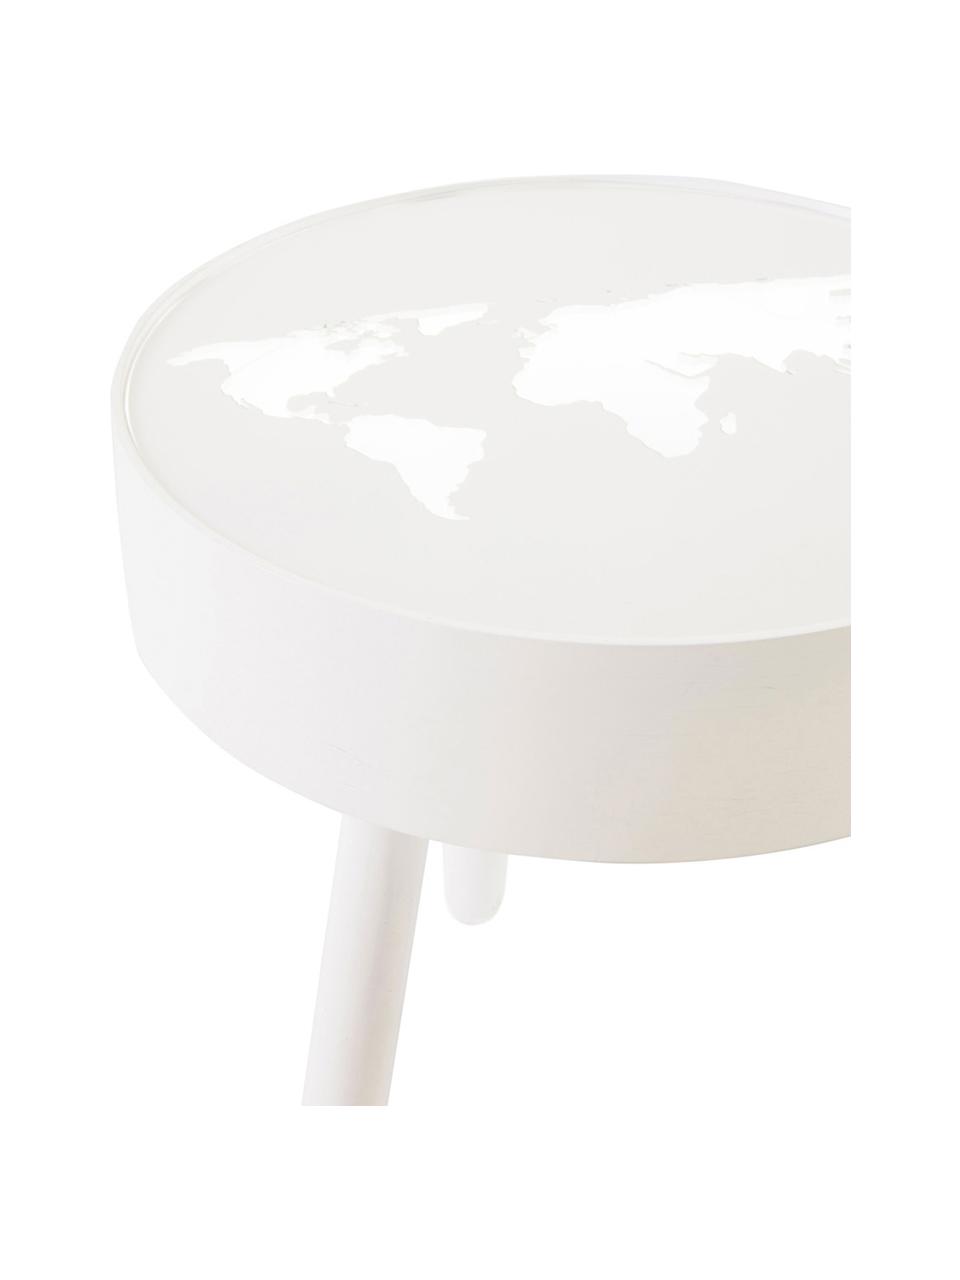 Stolik z drewna ze zintegrowaną lampą LED Monroy, Stelaż: drewno, Blat: szkło akrylowe, Biały, Ø 40 x W 42 cm